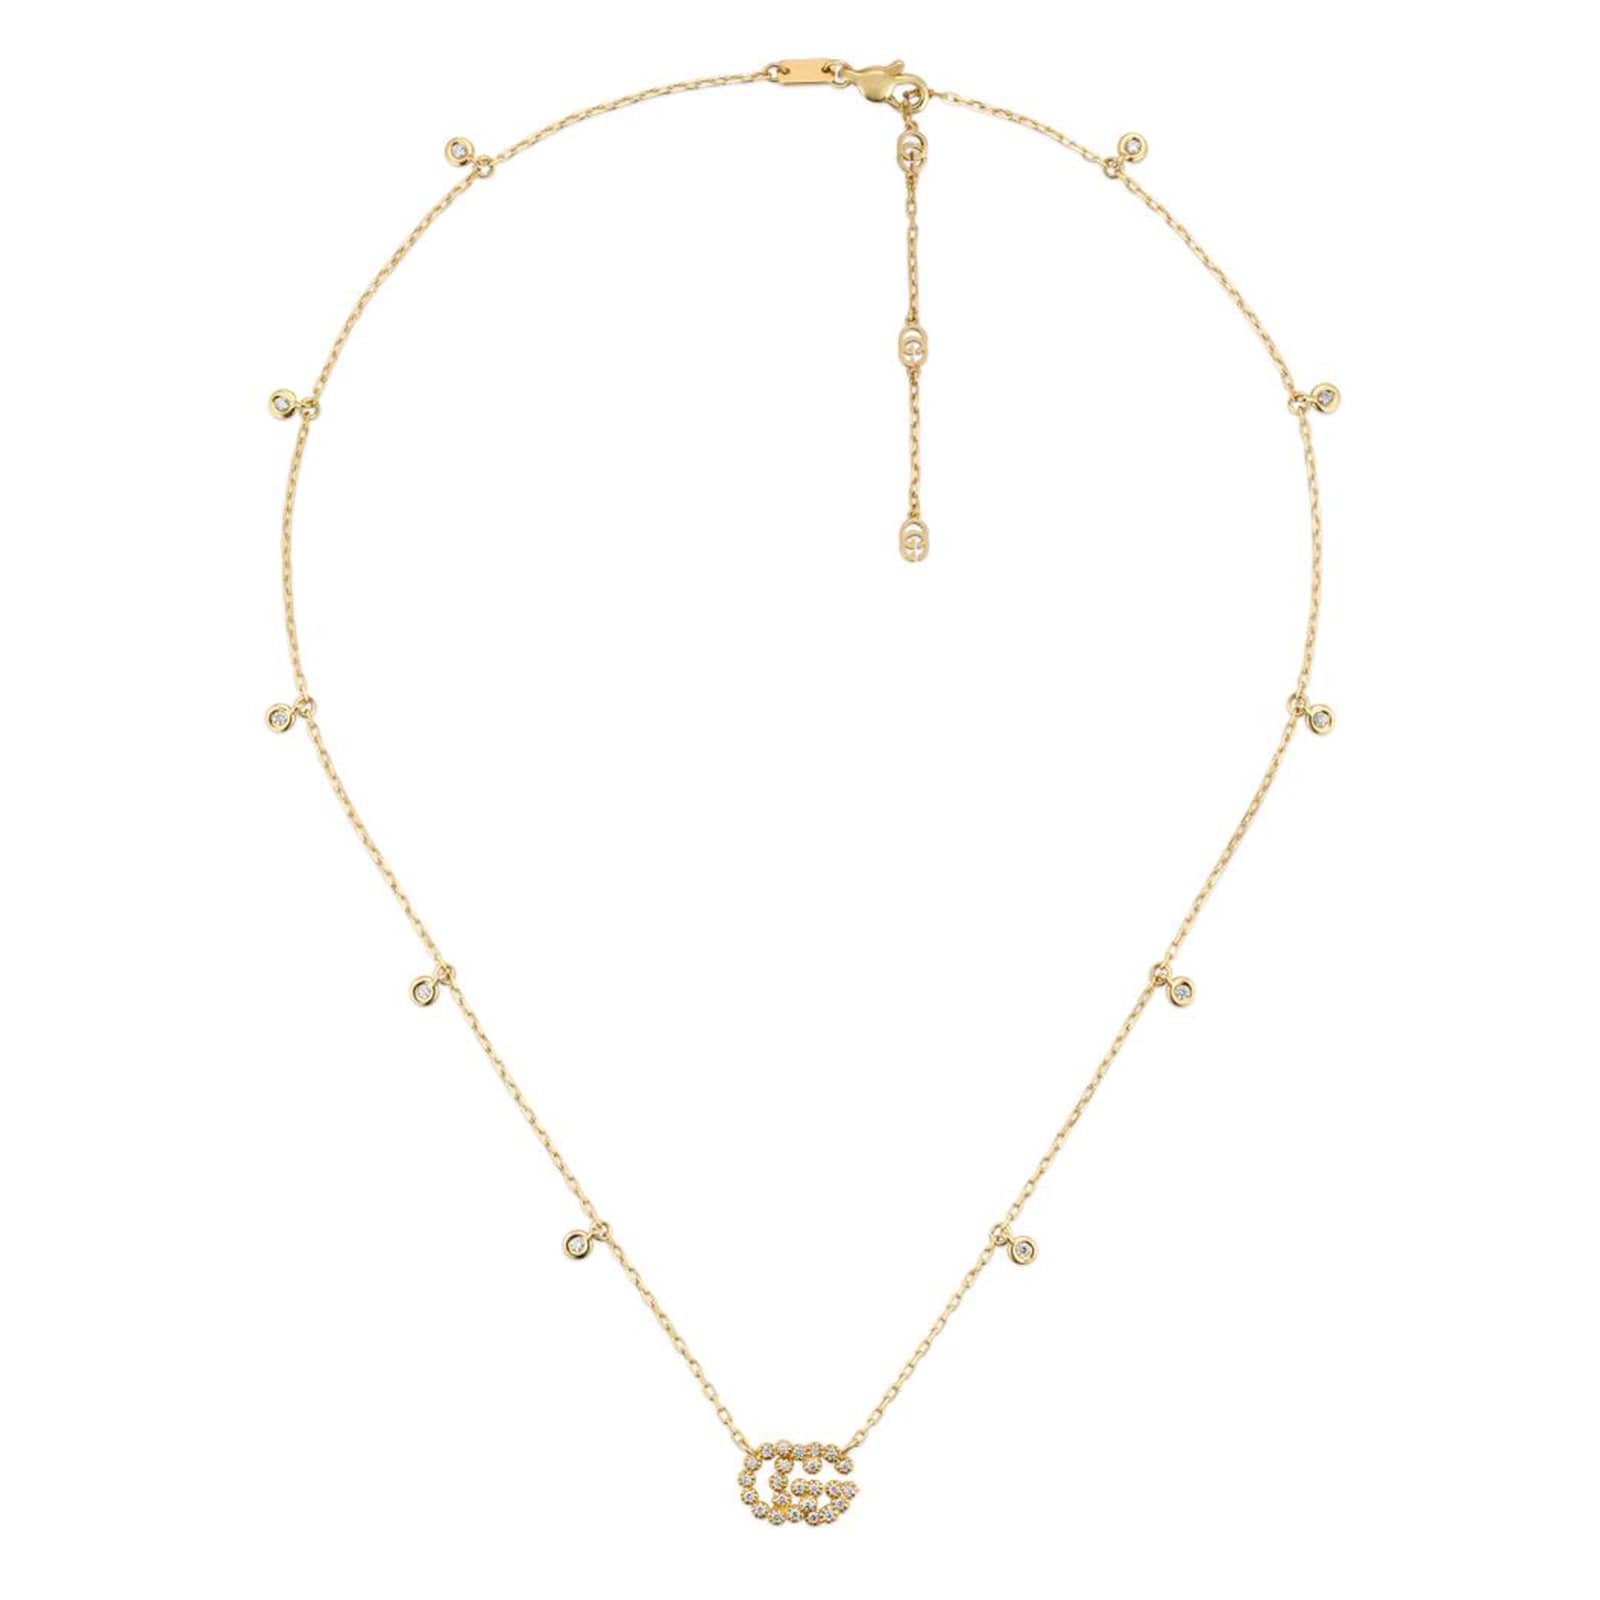 Gucci 18ct Yellow Gold Diamond Necklace YBB48162400100U | Goldsmiths